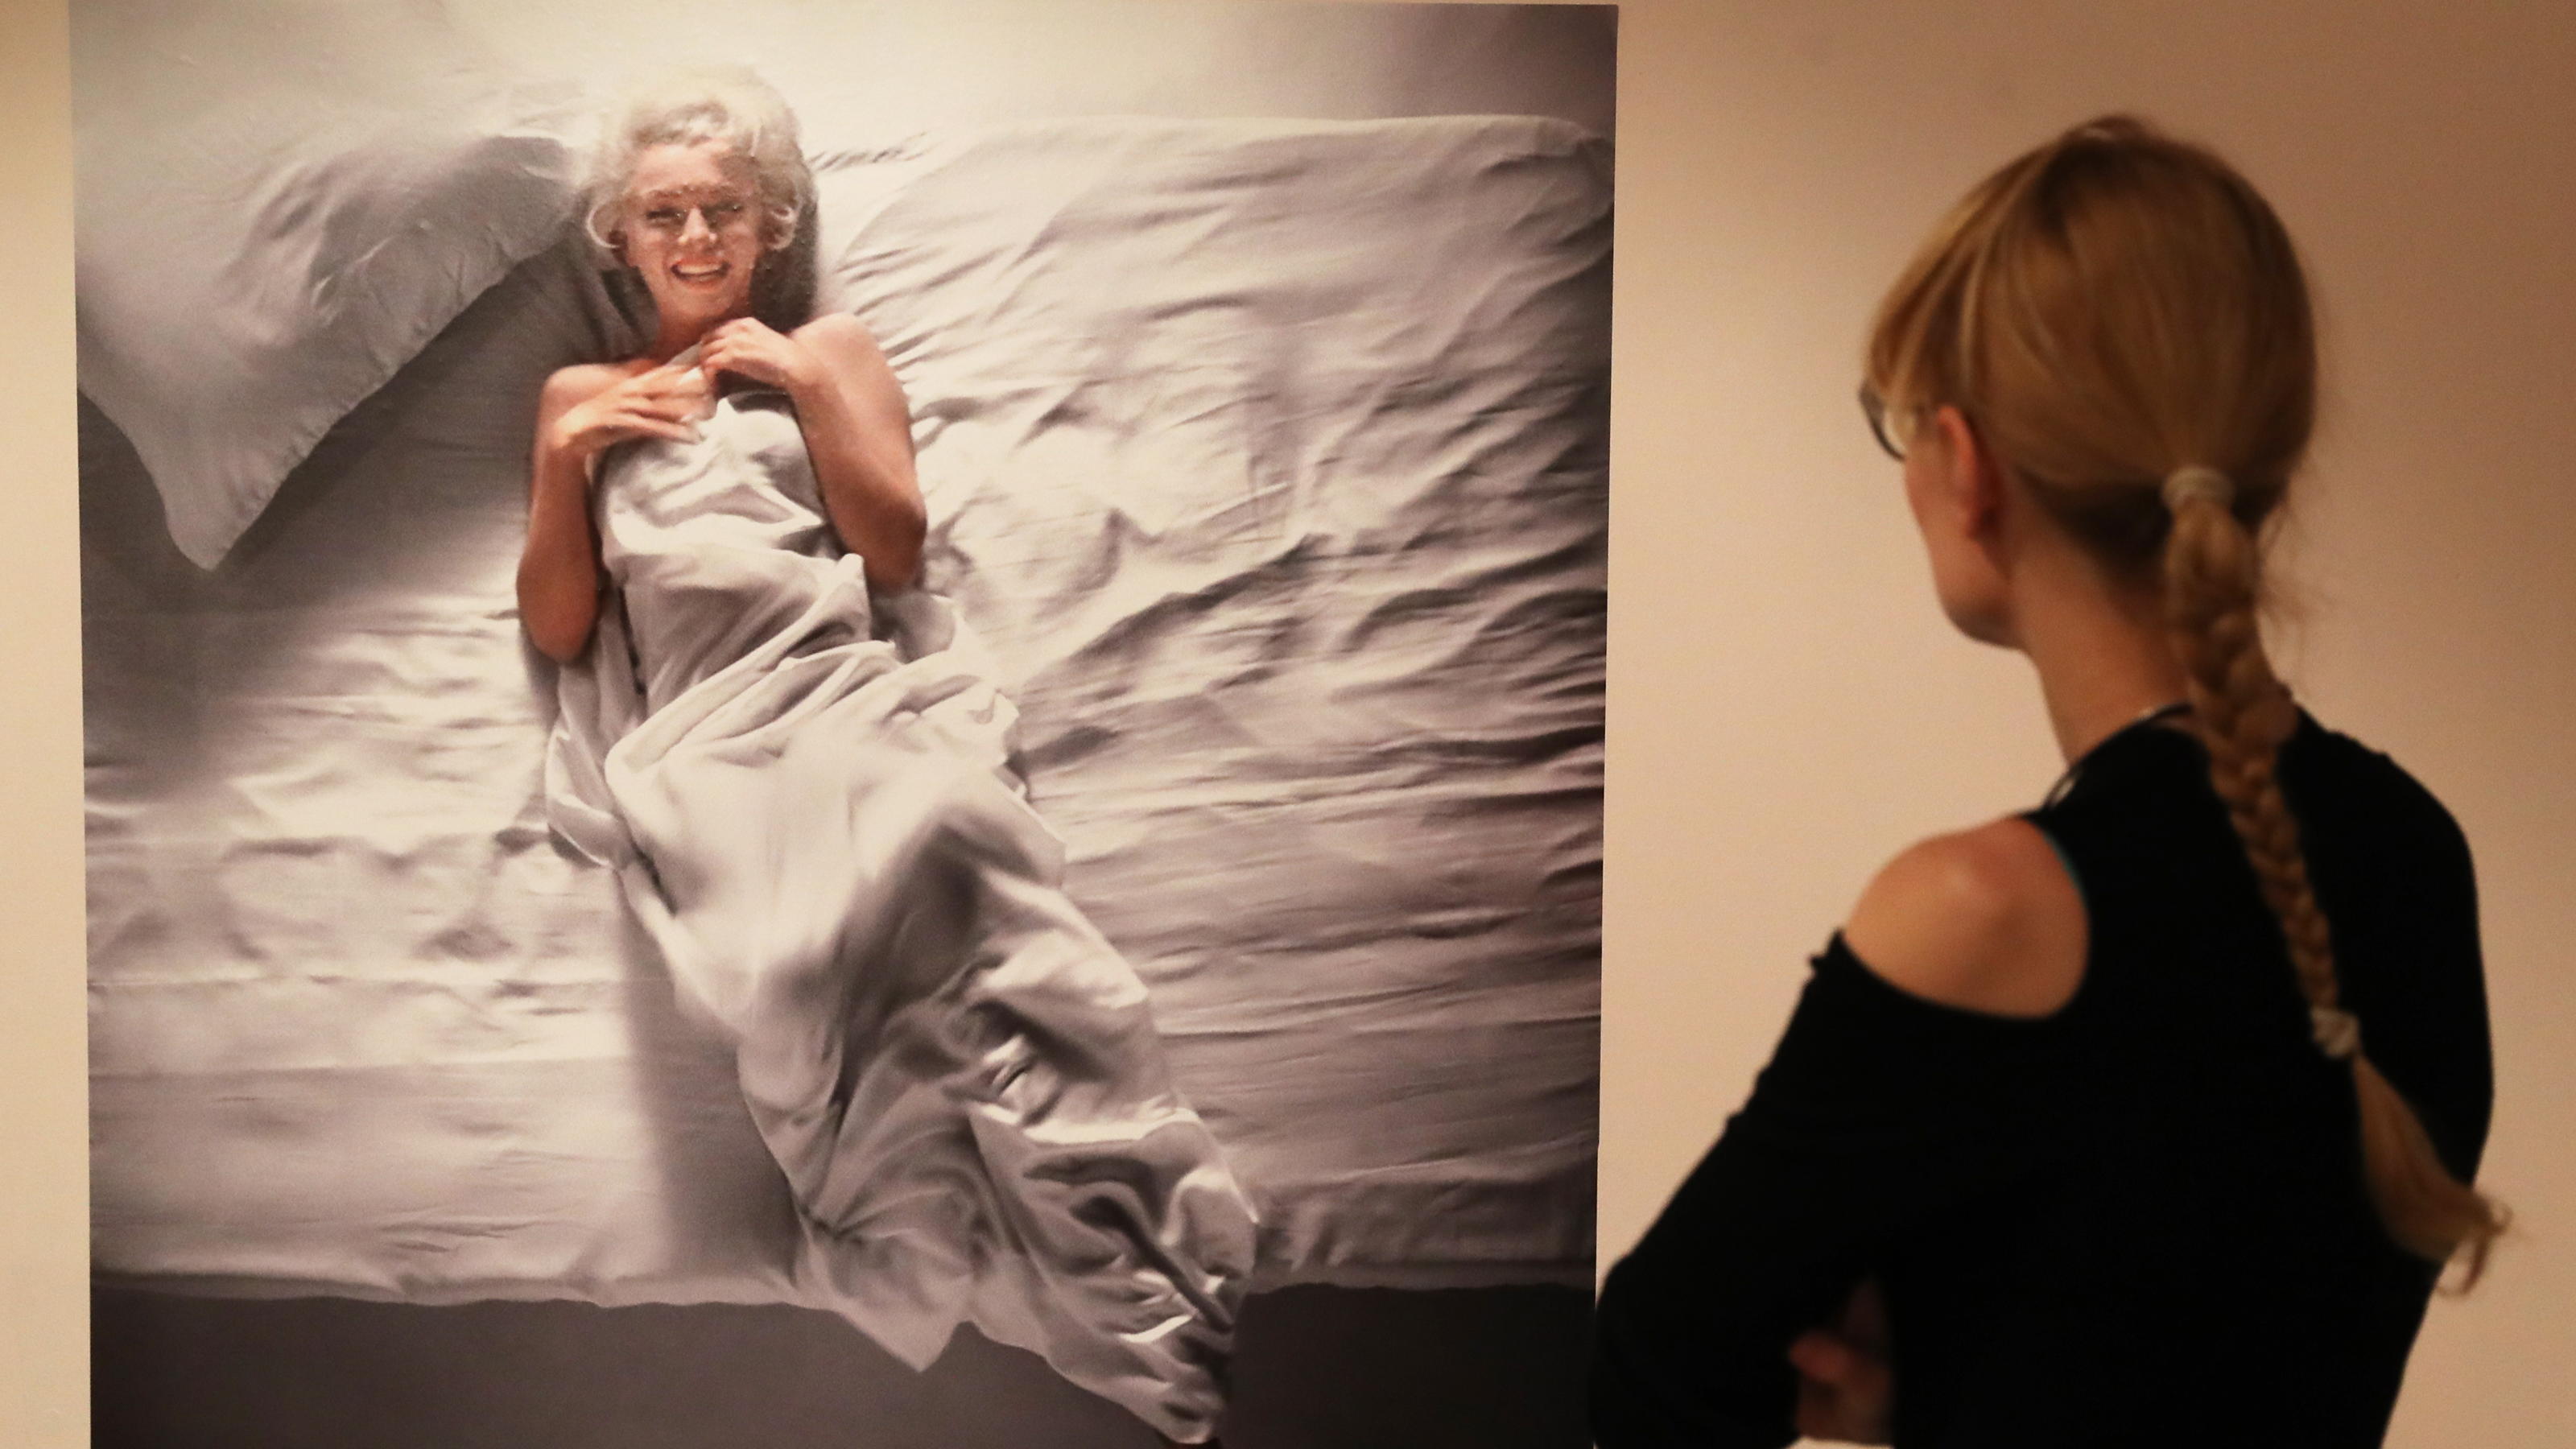 Douglas Kirkland schoss die ikonischen Fotos von Marilyn Monroe nackt im Bett.